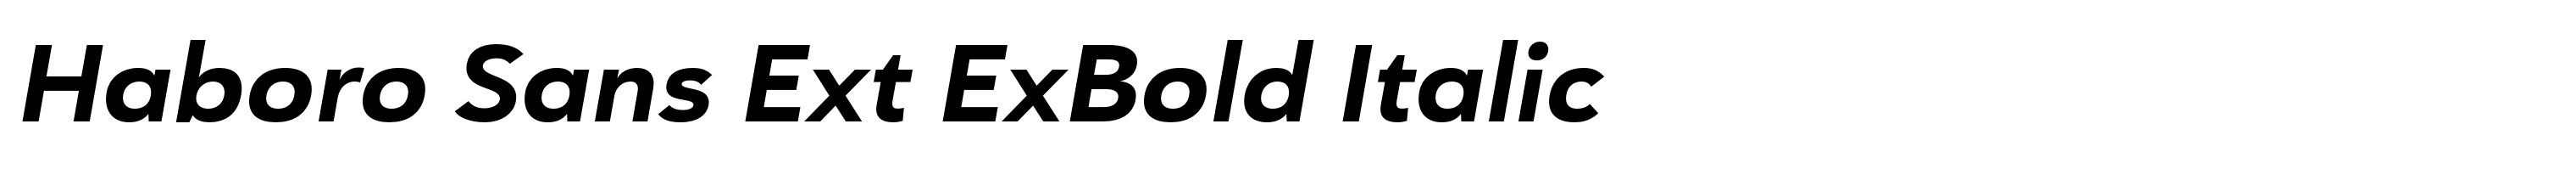 Haboro Sans Ext ExBold Italic